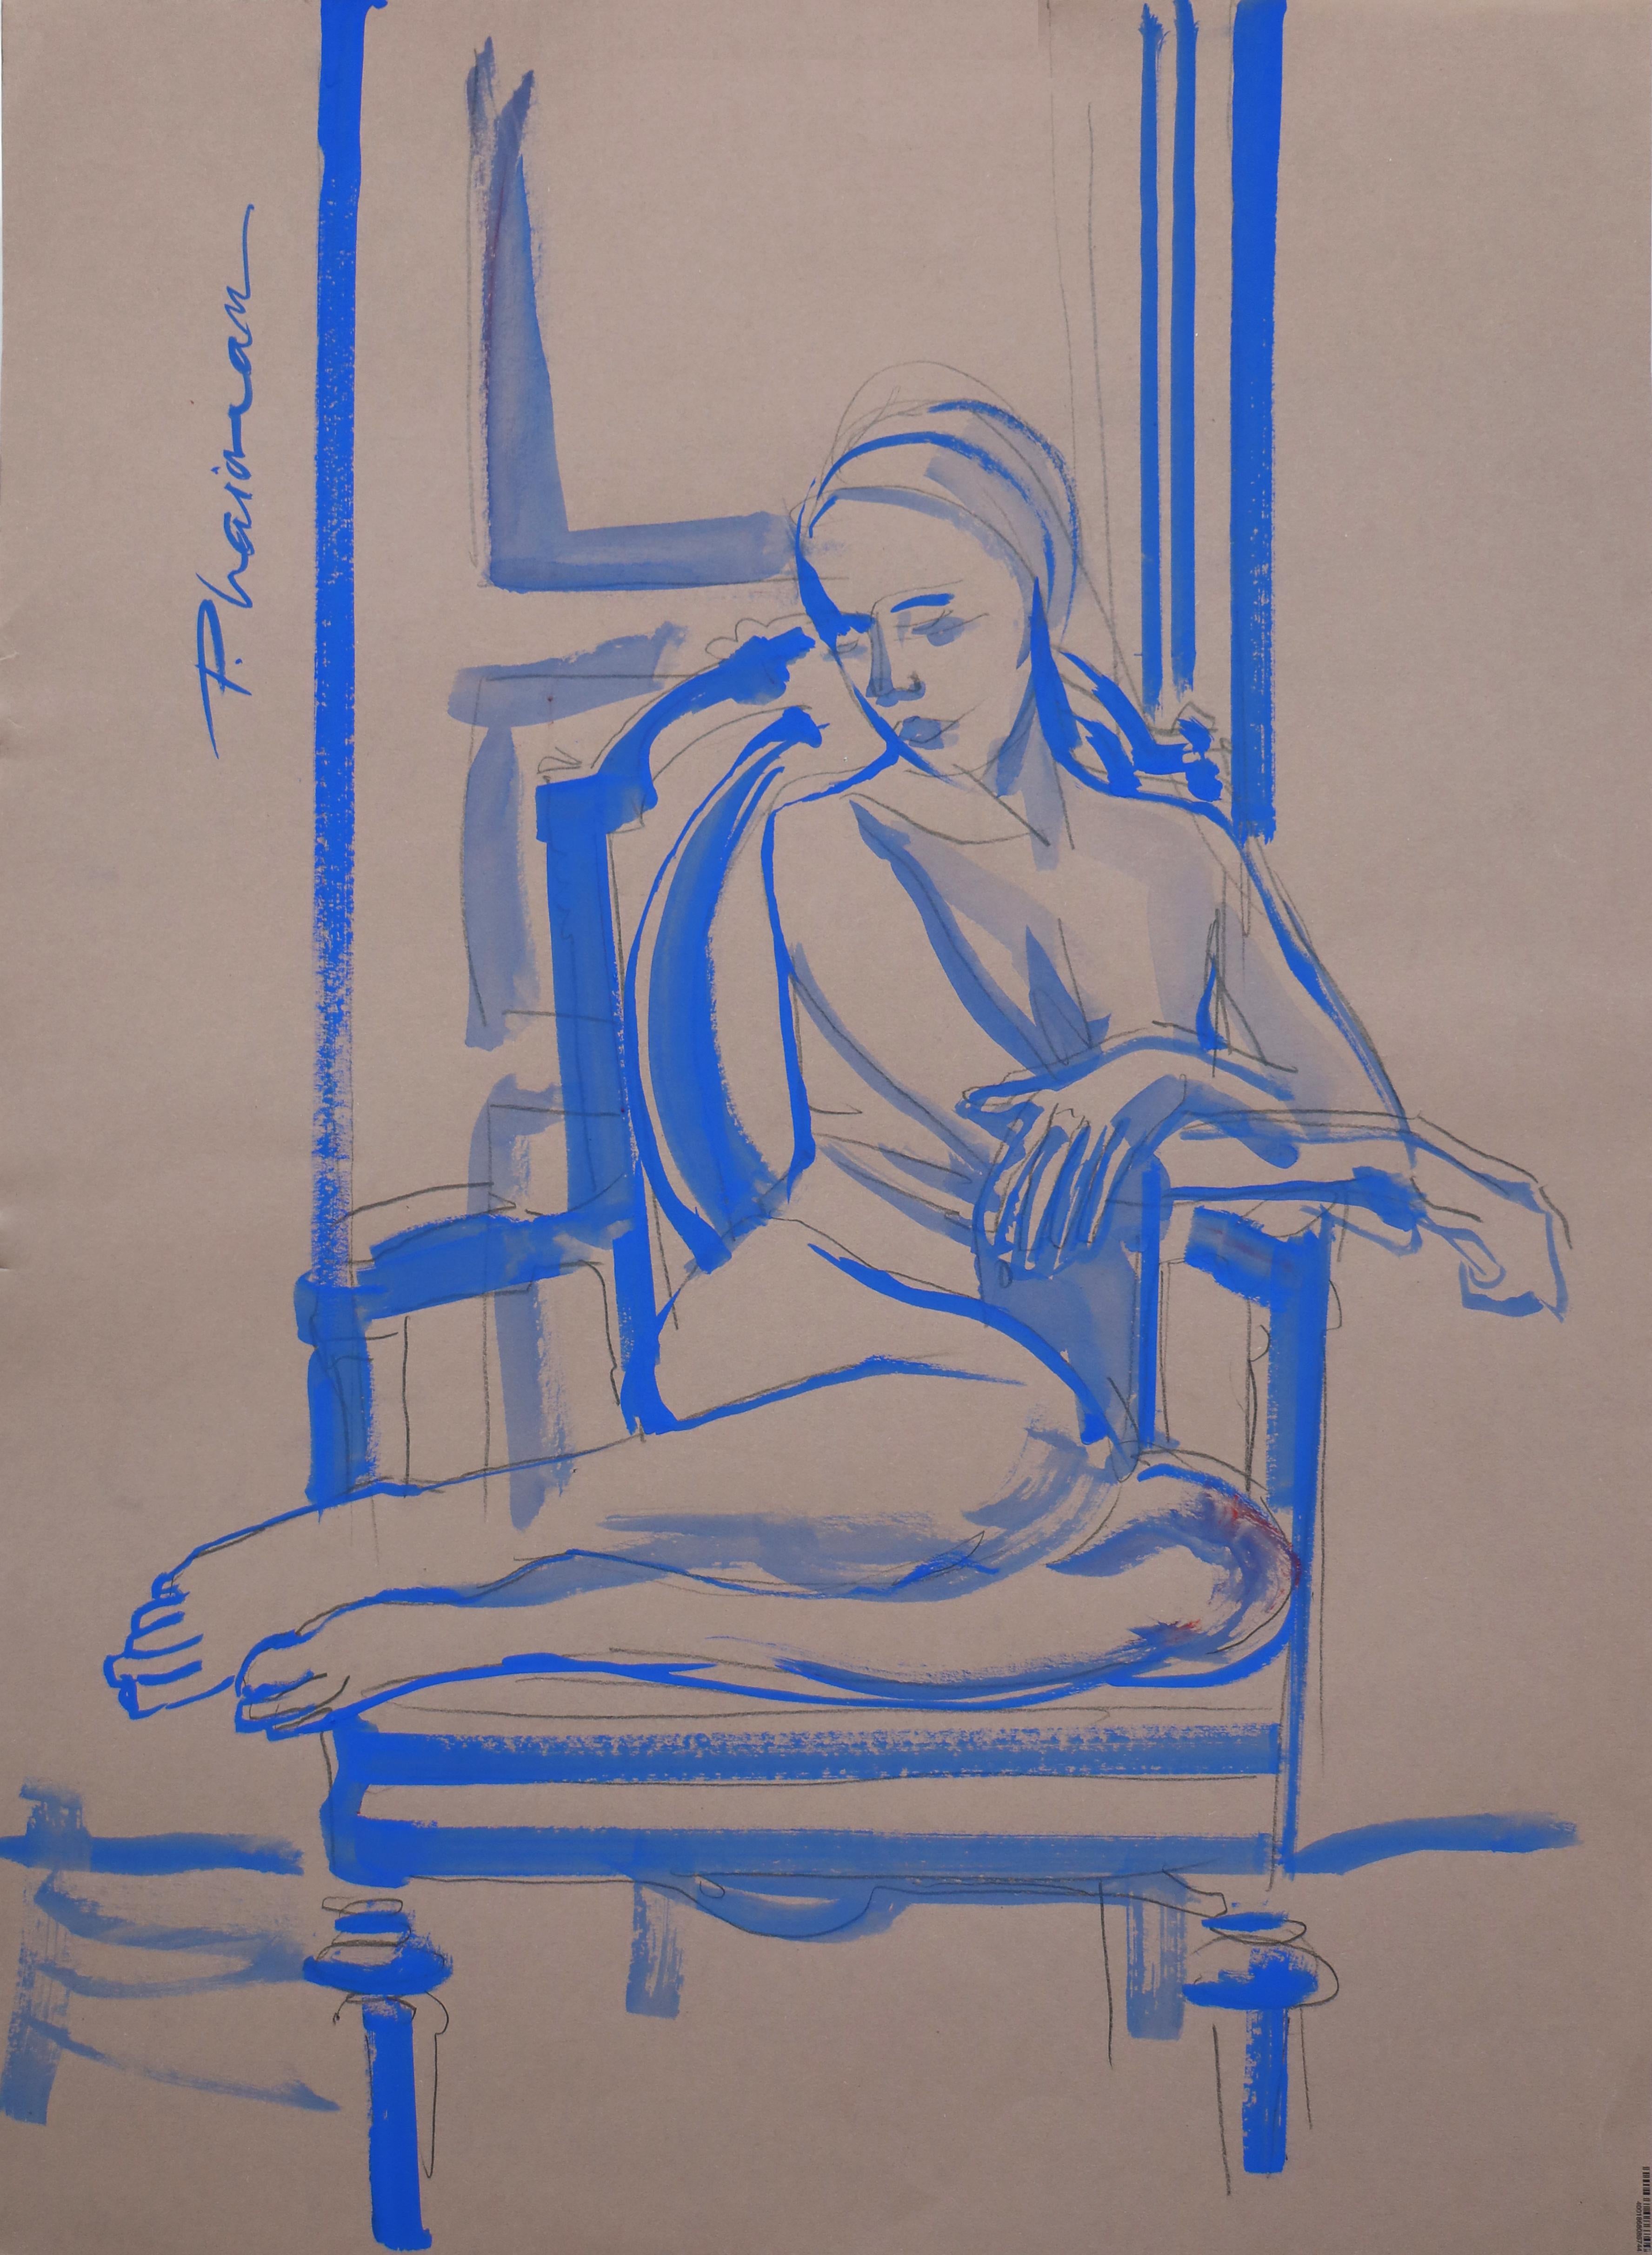 Akt in Blau – weiblicher Aktzeichnung von Paula Craioveanu, inspiriert von Matisse